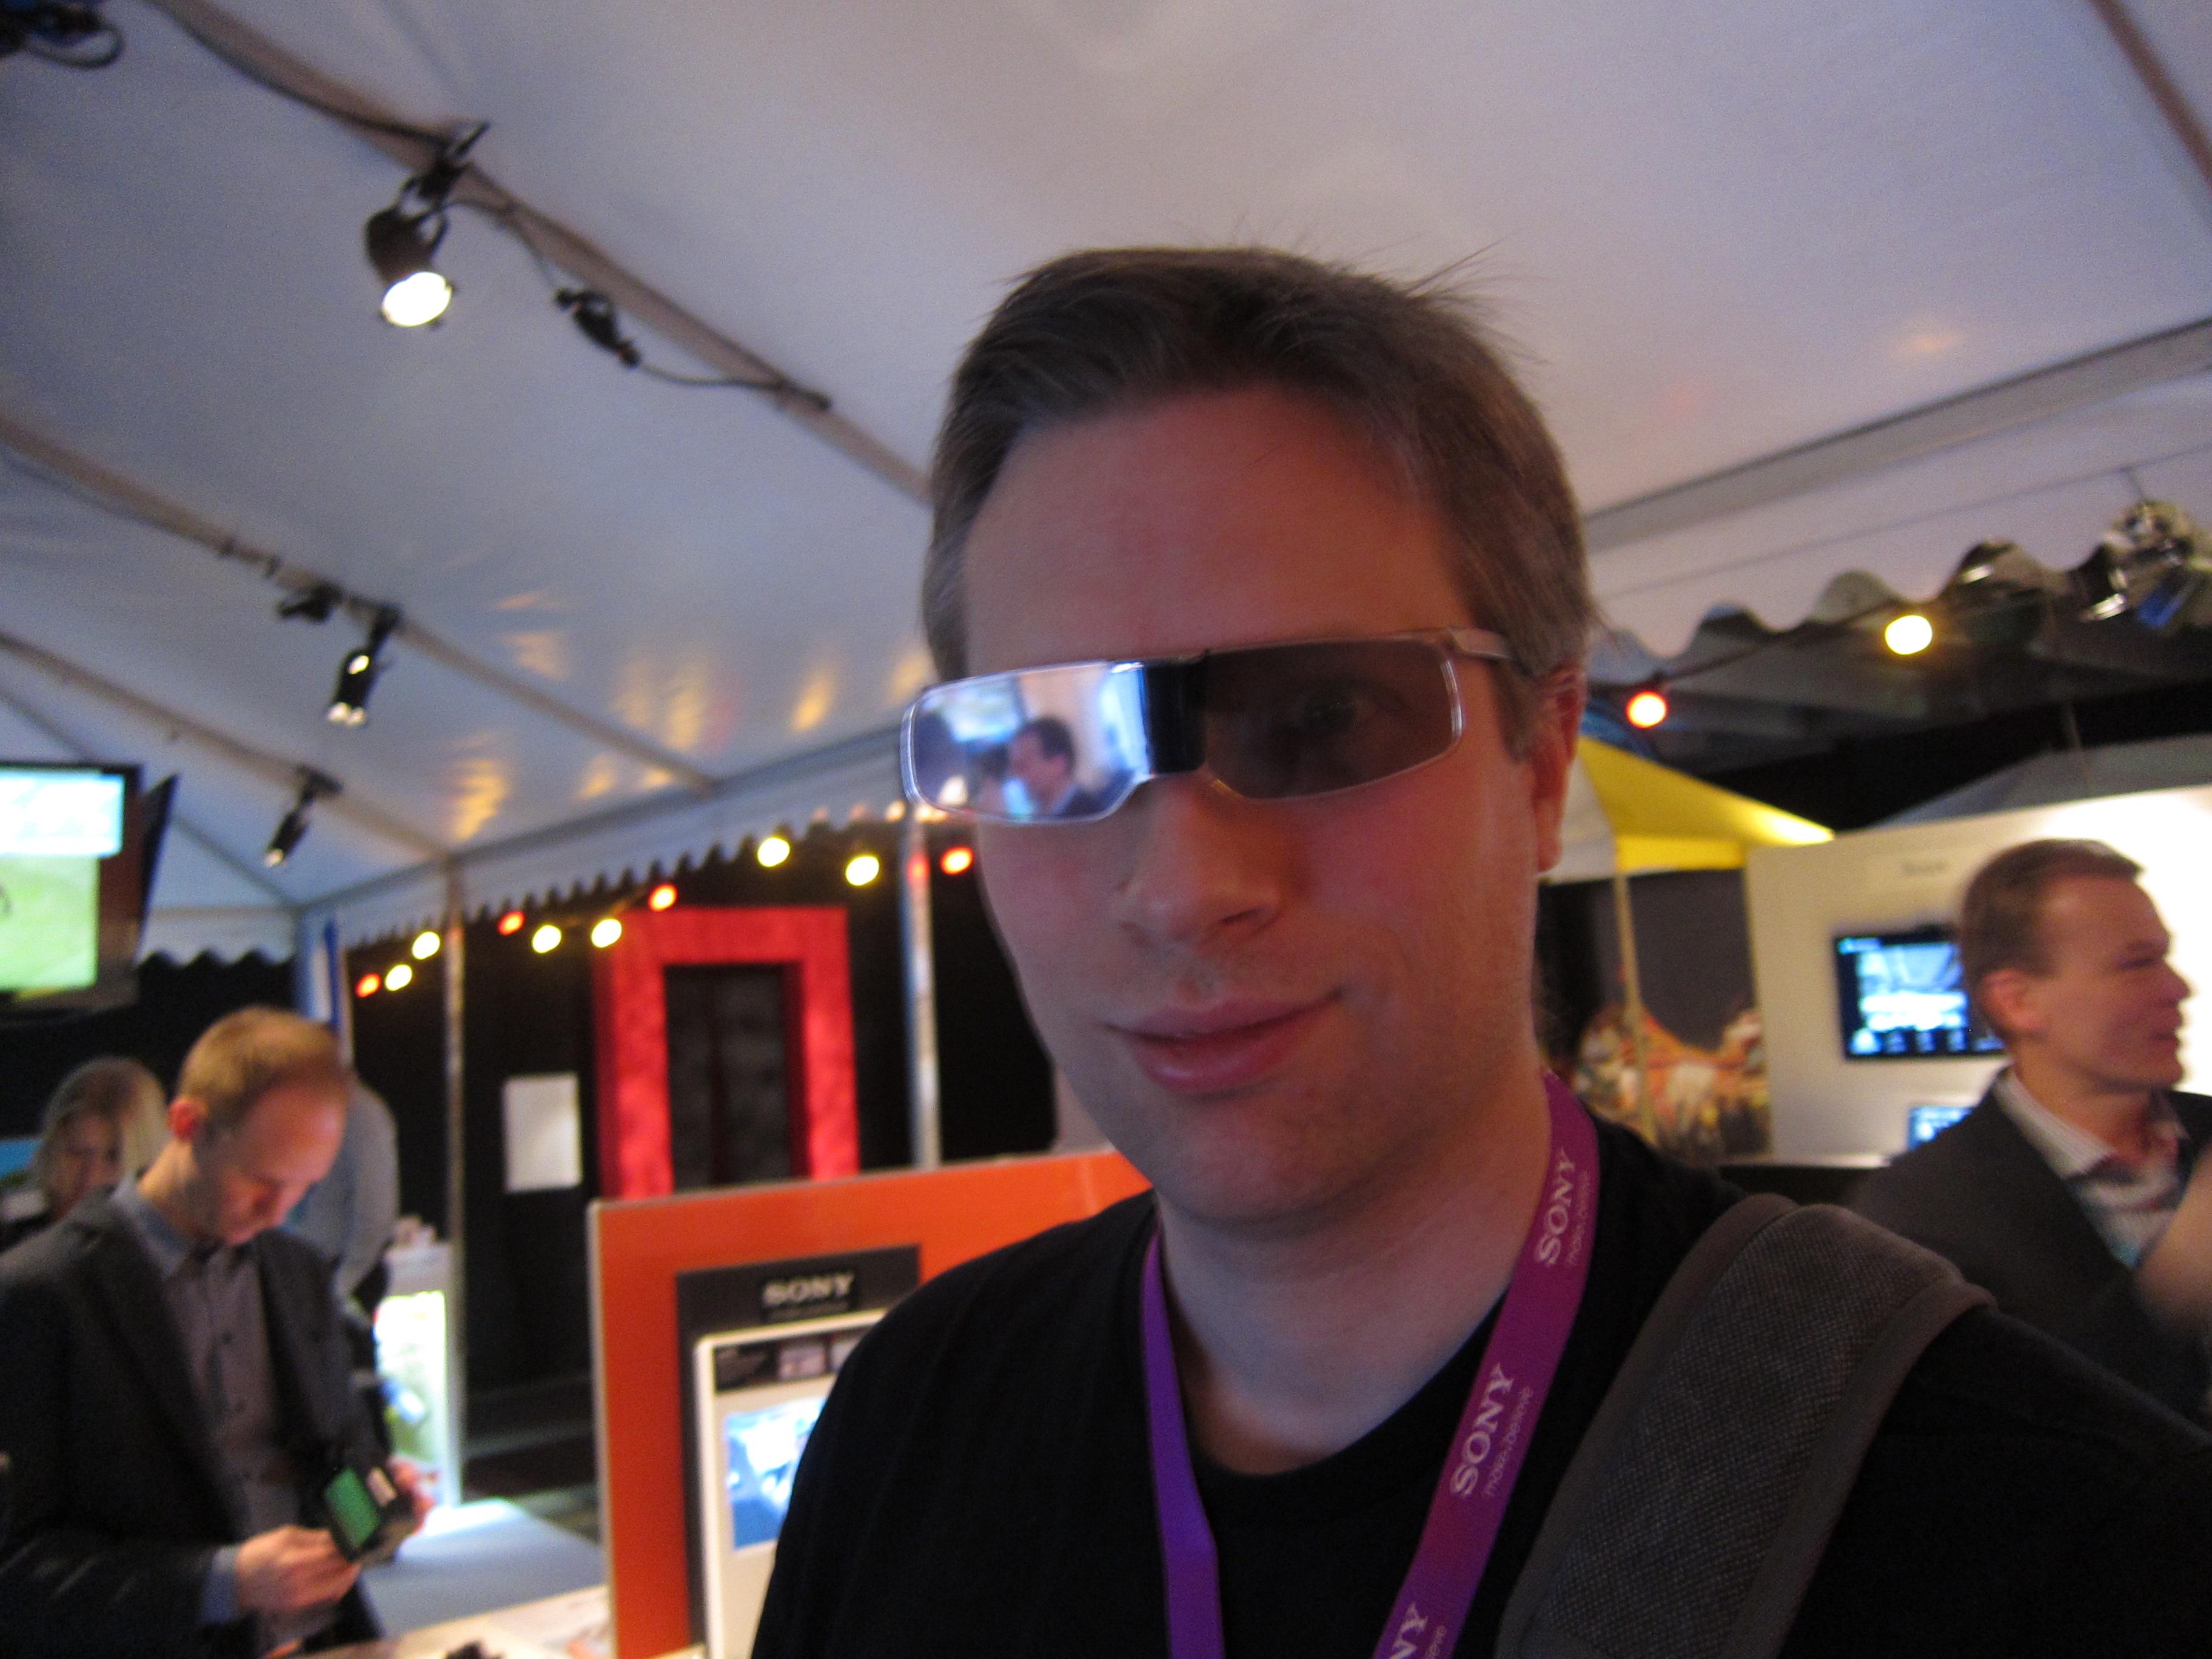 Det kan diskuteres hvor godt vår kollega kledde de nye 3D-brillene fra Sony, men de var i hvert fall langt tynnere og lettere enn tidligere 3D-briller.